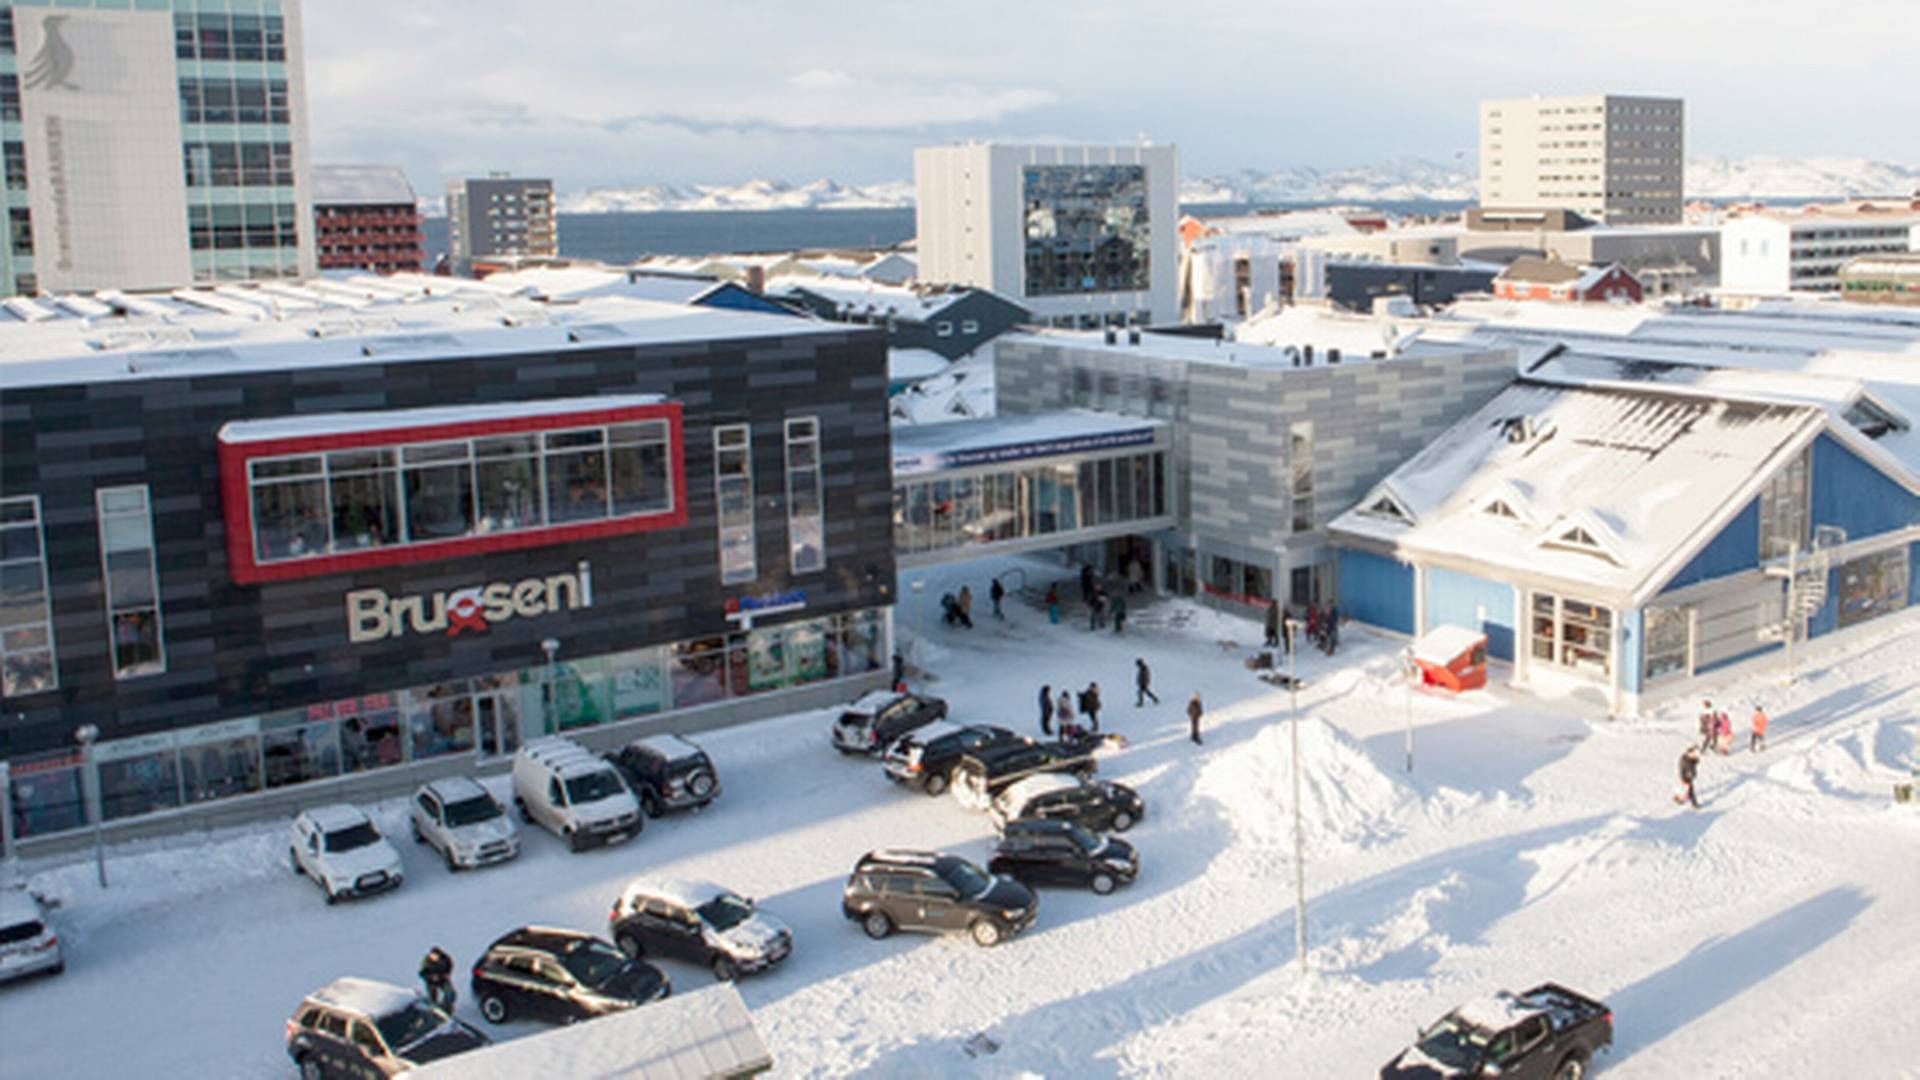 Brugseni driver 17 butikker i Grønland, her i hovedstaden Nuuk. | Foto: Pr/knb